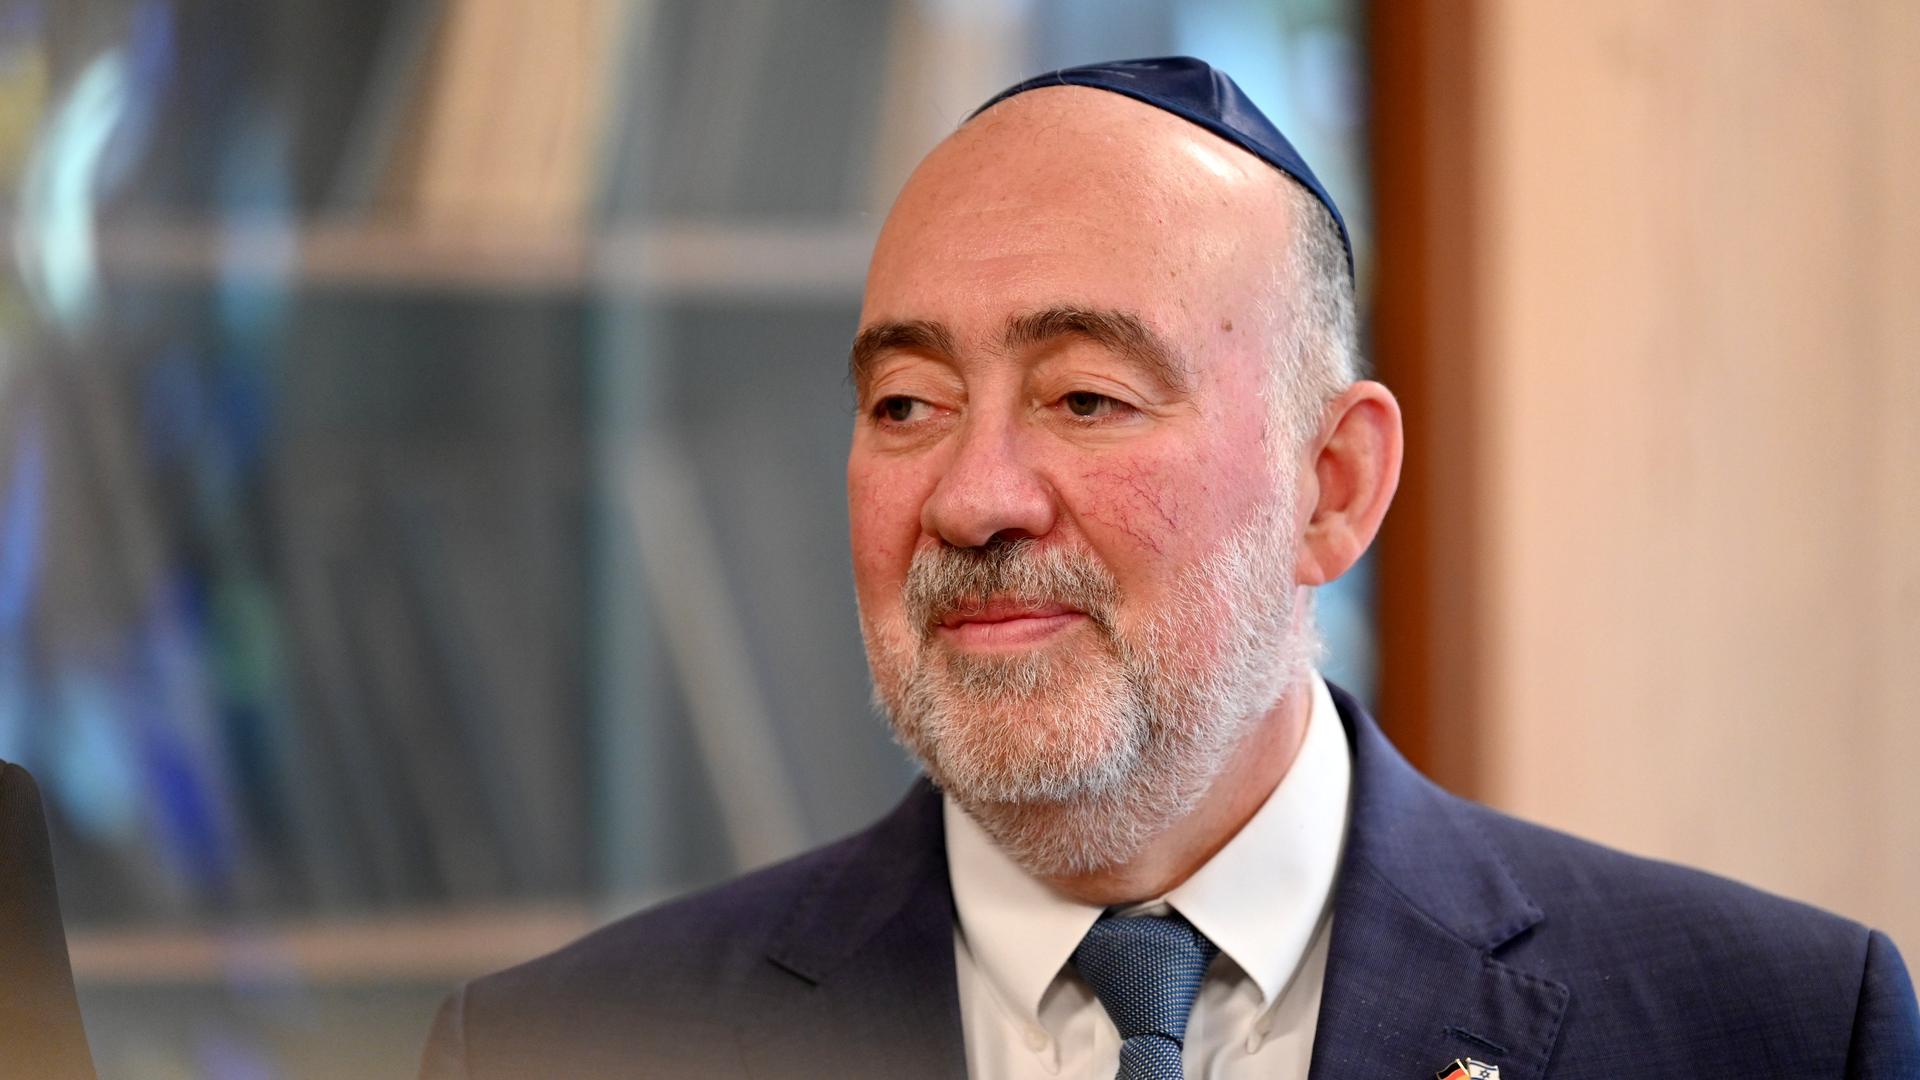 Der israelische Botschafter, Ron Prosor, steht mit Kippa auf dem Kopf in einer Synagoge in Köln.